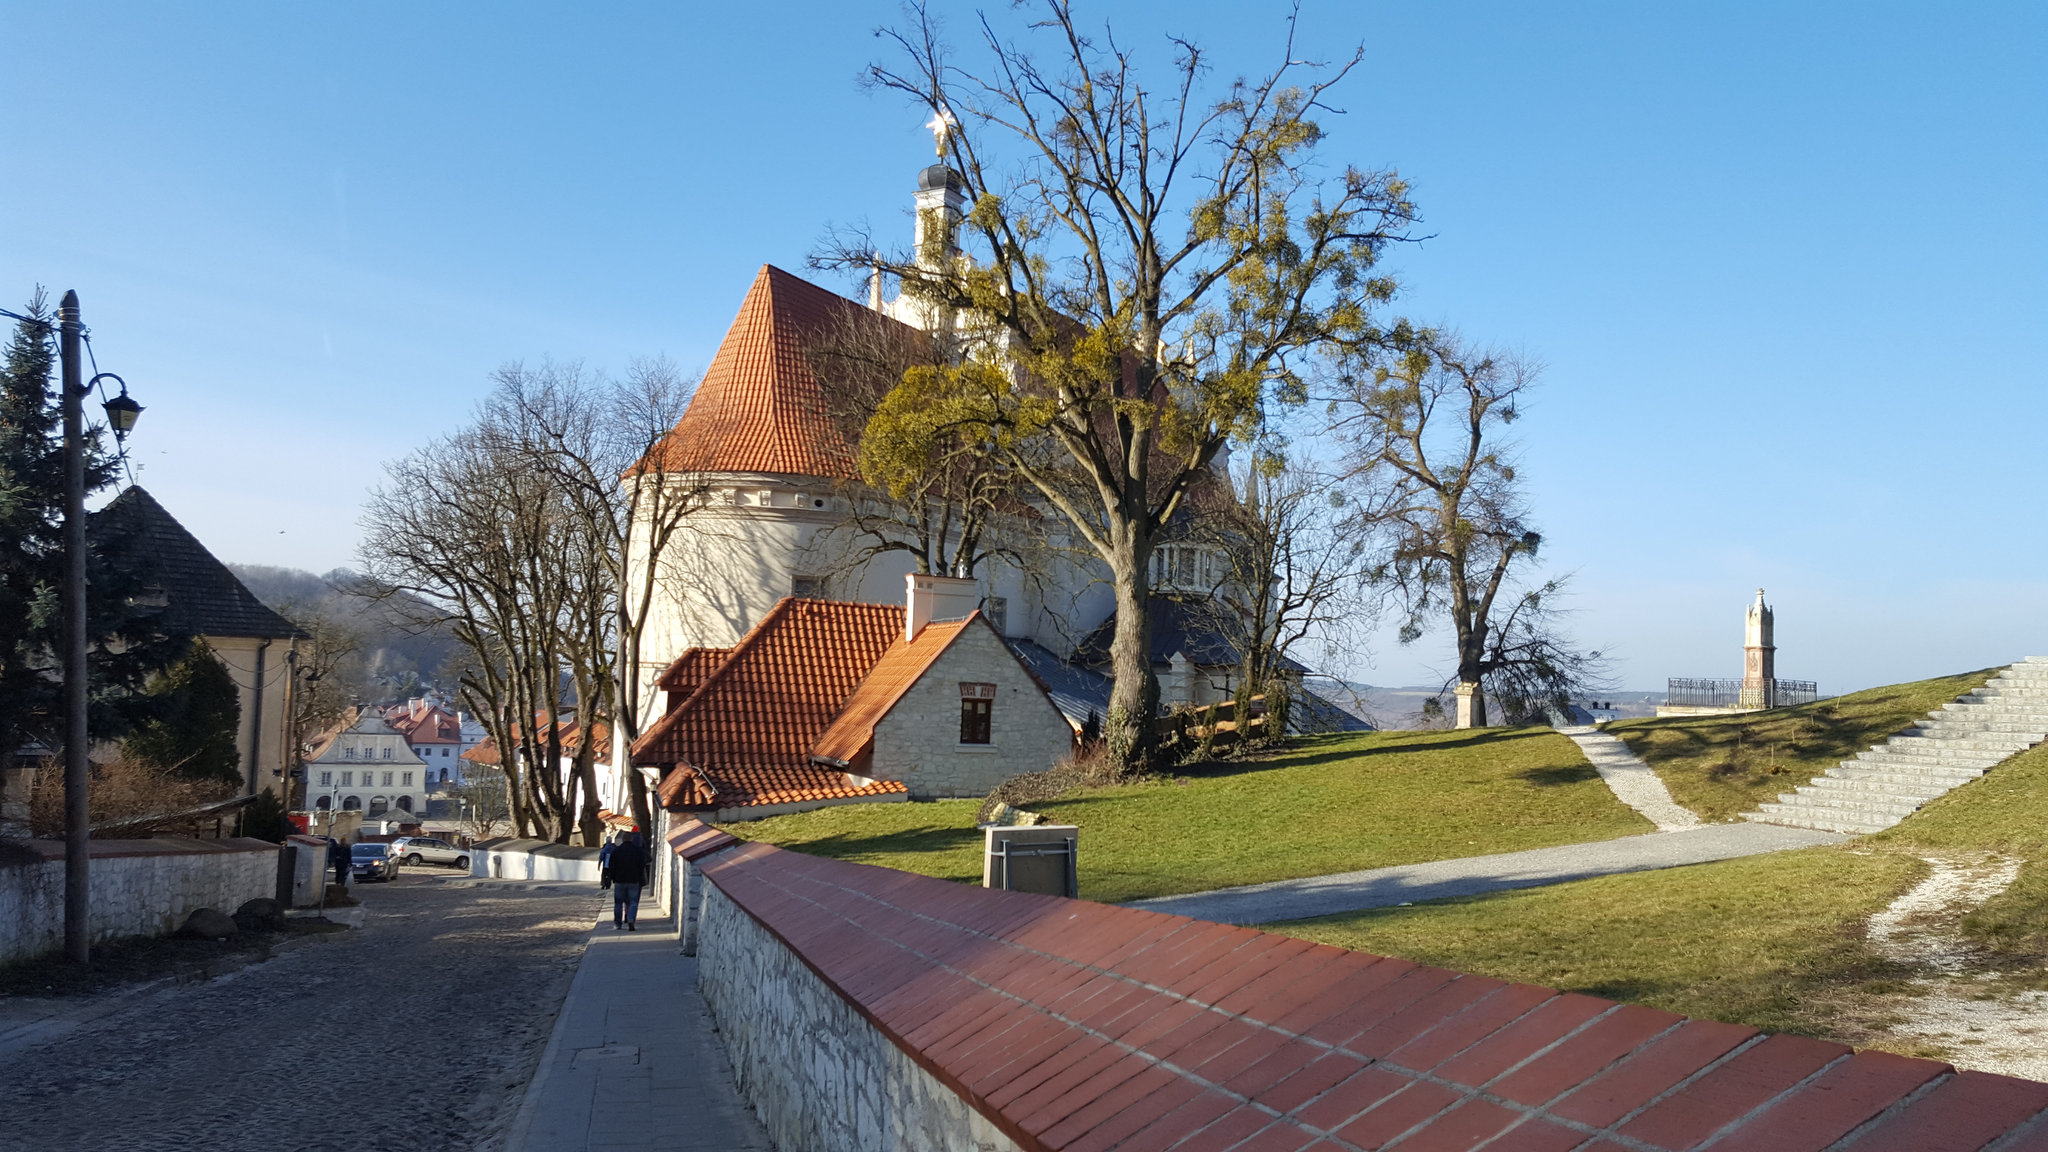 Saints John the Baptist and Bartholomew church in Kazimierz Dolny